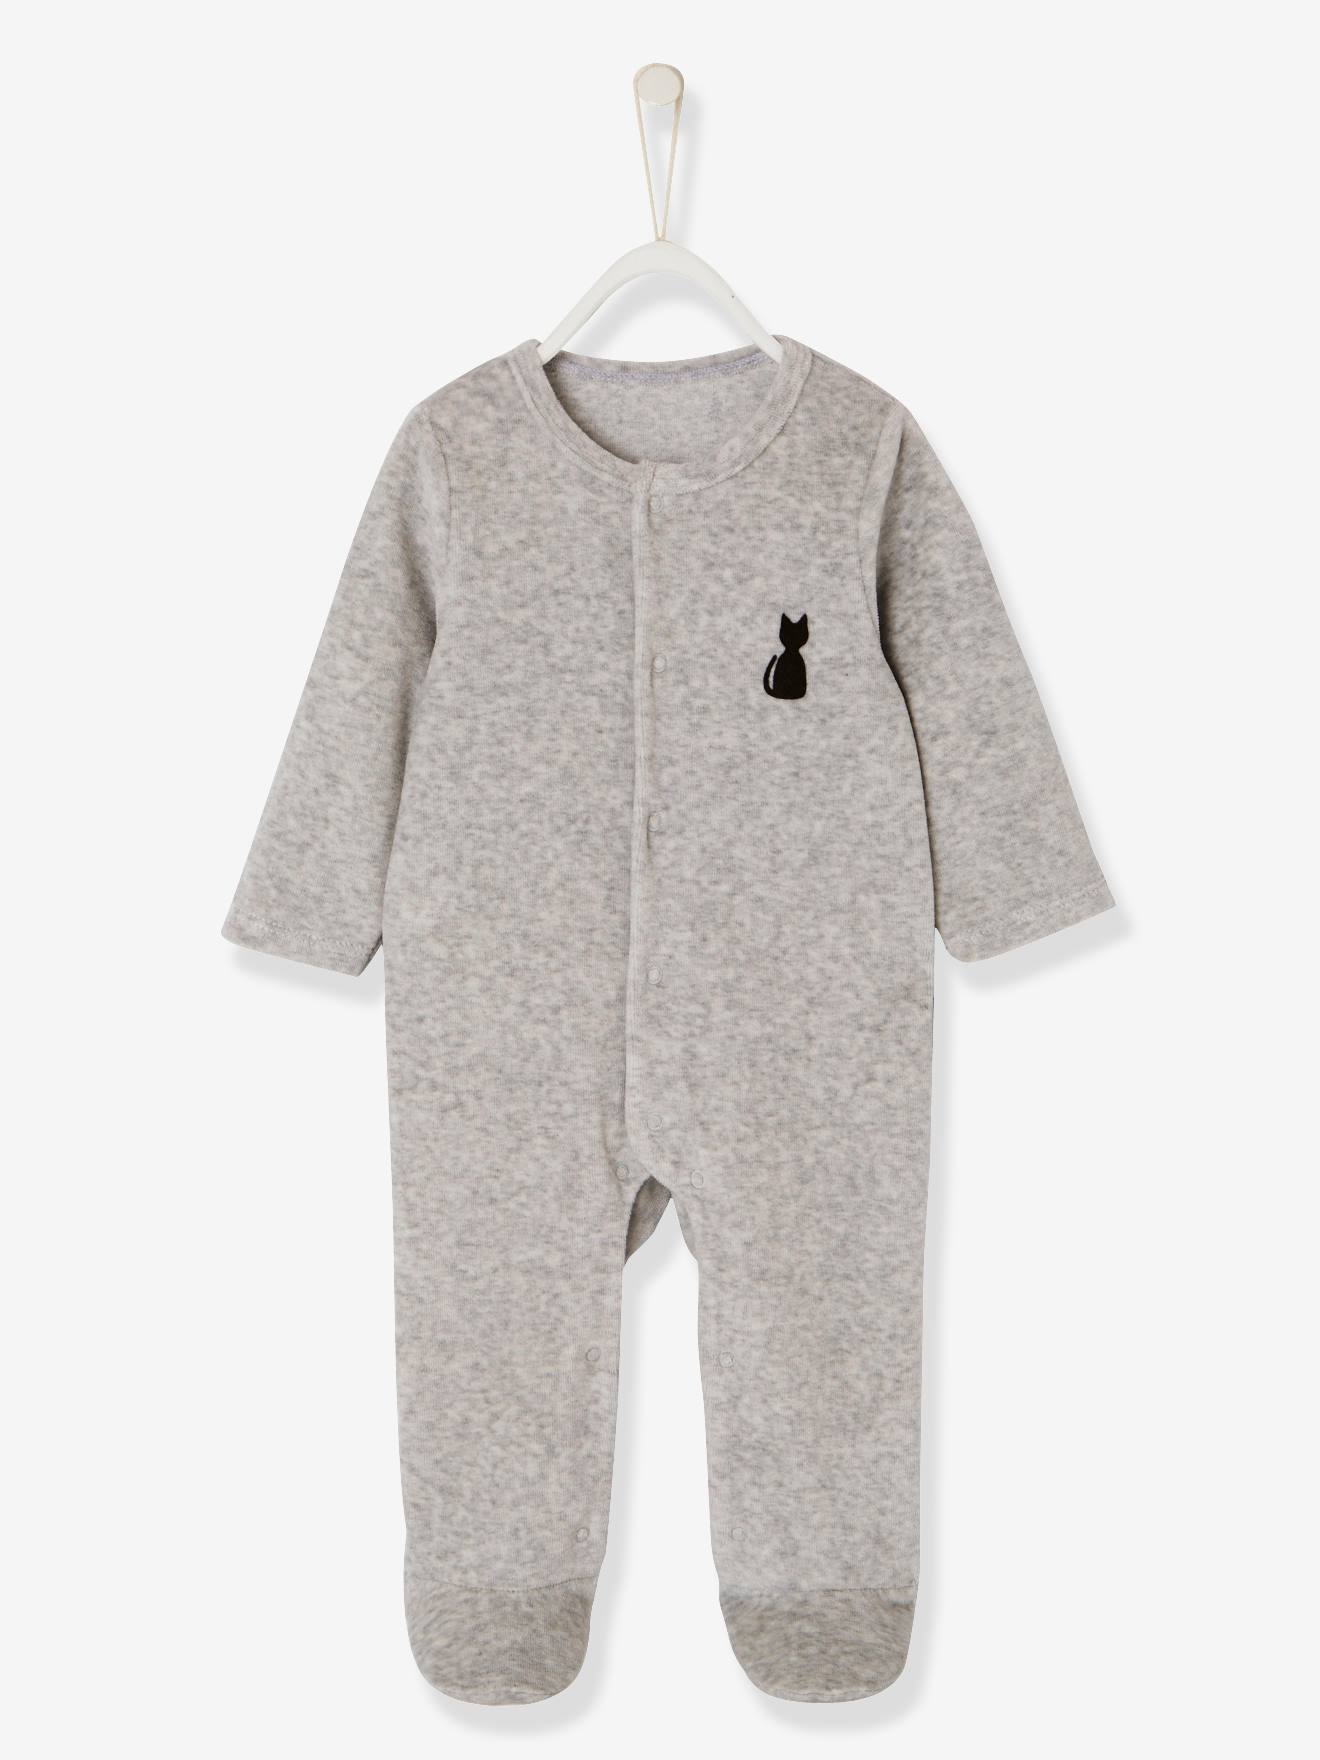 74CM VERTBAUDET Lot de 2 pyjamas bébé en velours ouverture devant Lot blanc gris 12M 